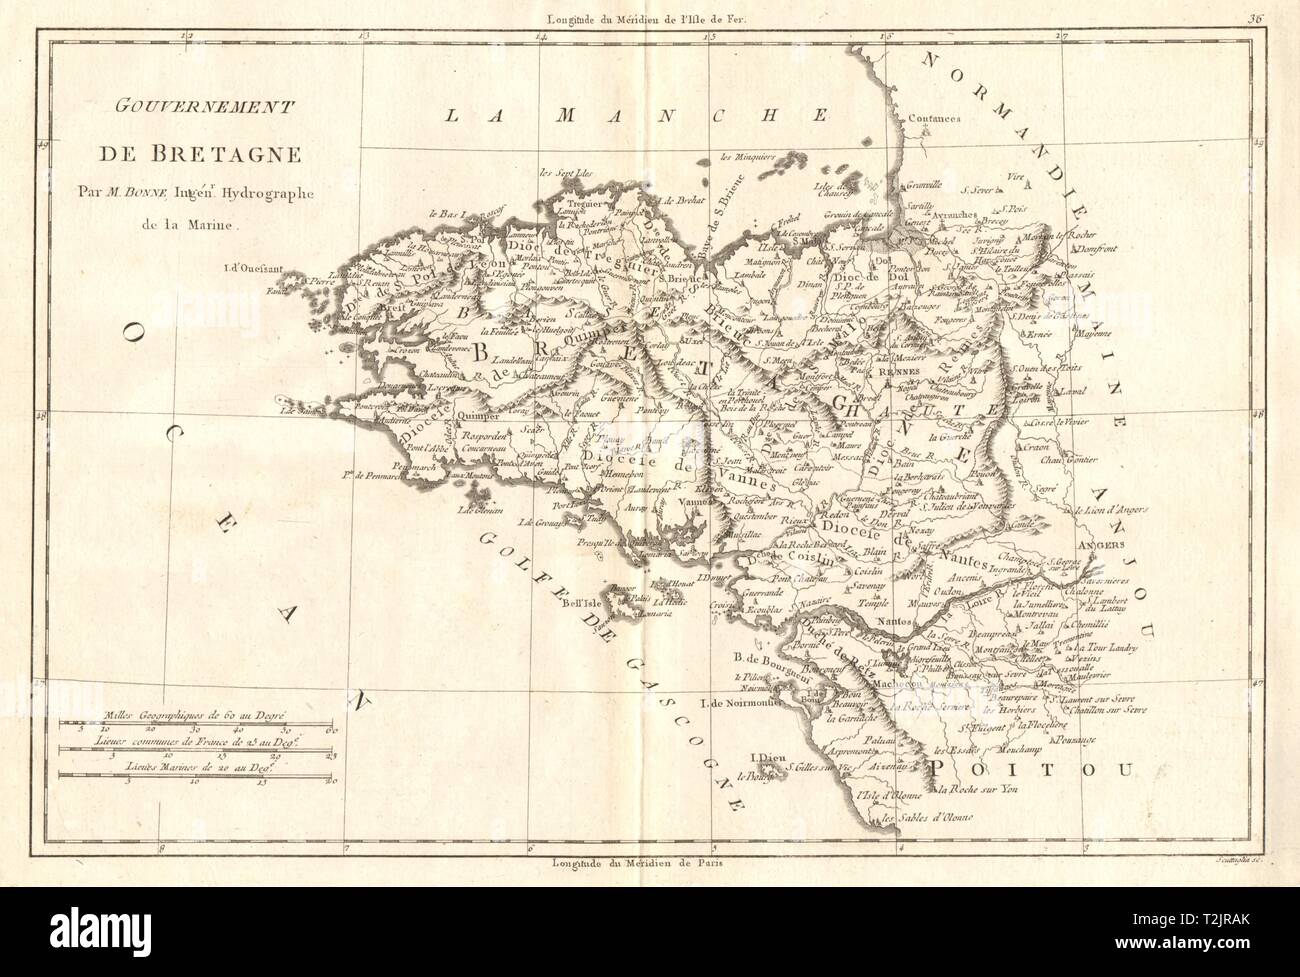 Gouvernement de Bretagne. The Province of Brittany. France. BONNE 1789 ...